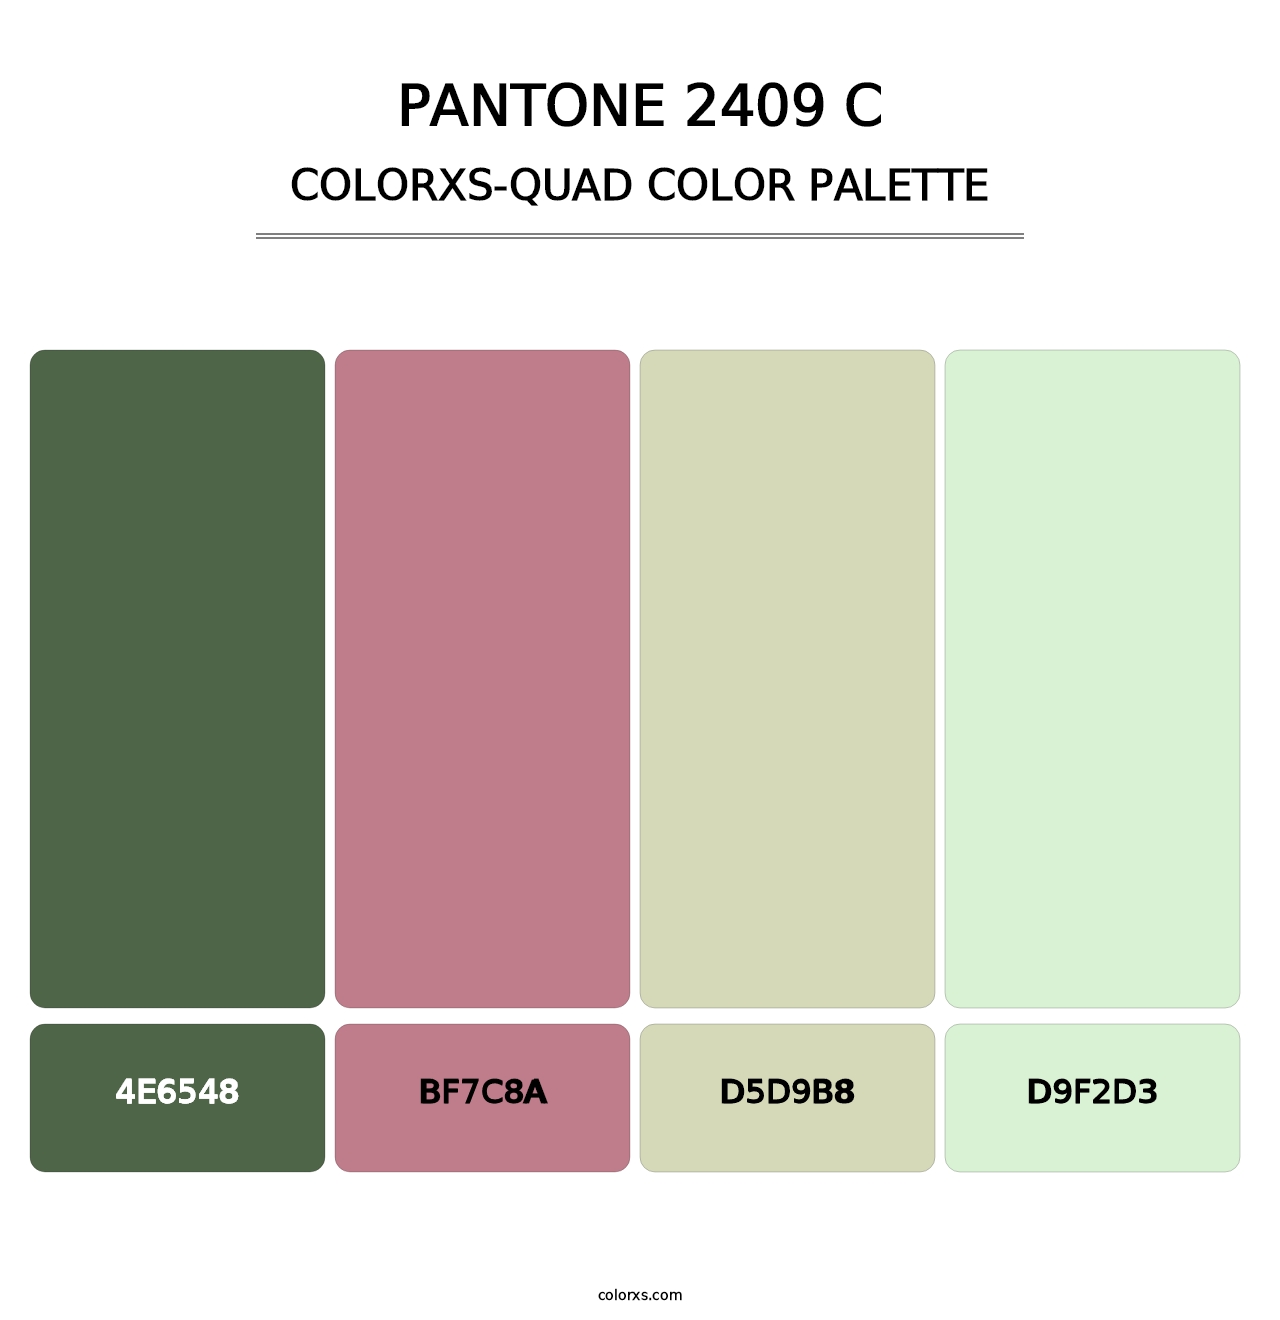 PANTONE 2409 C - Colorxs Quad Palette